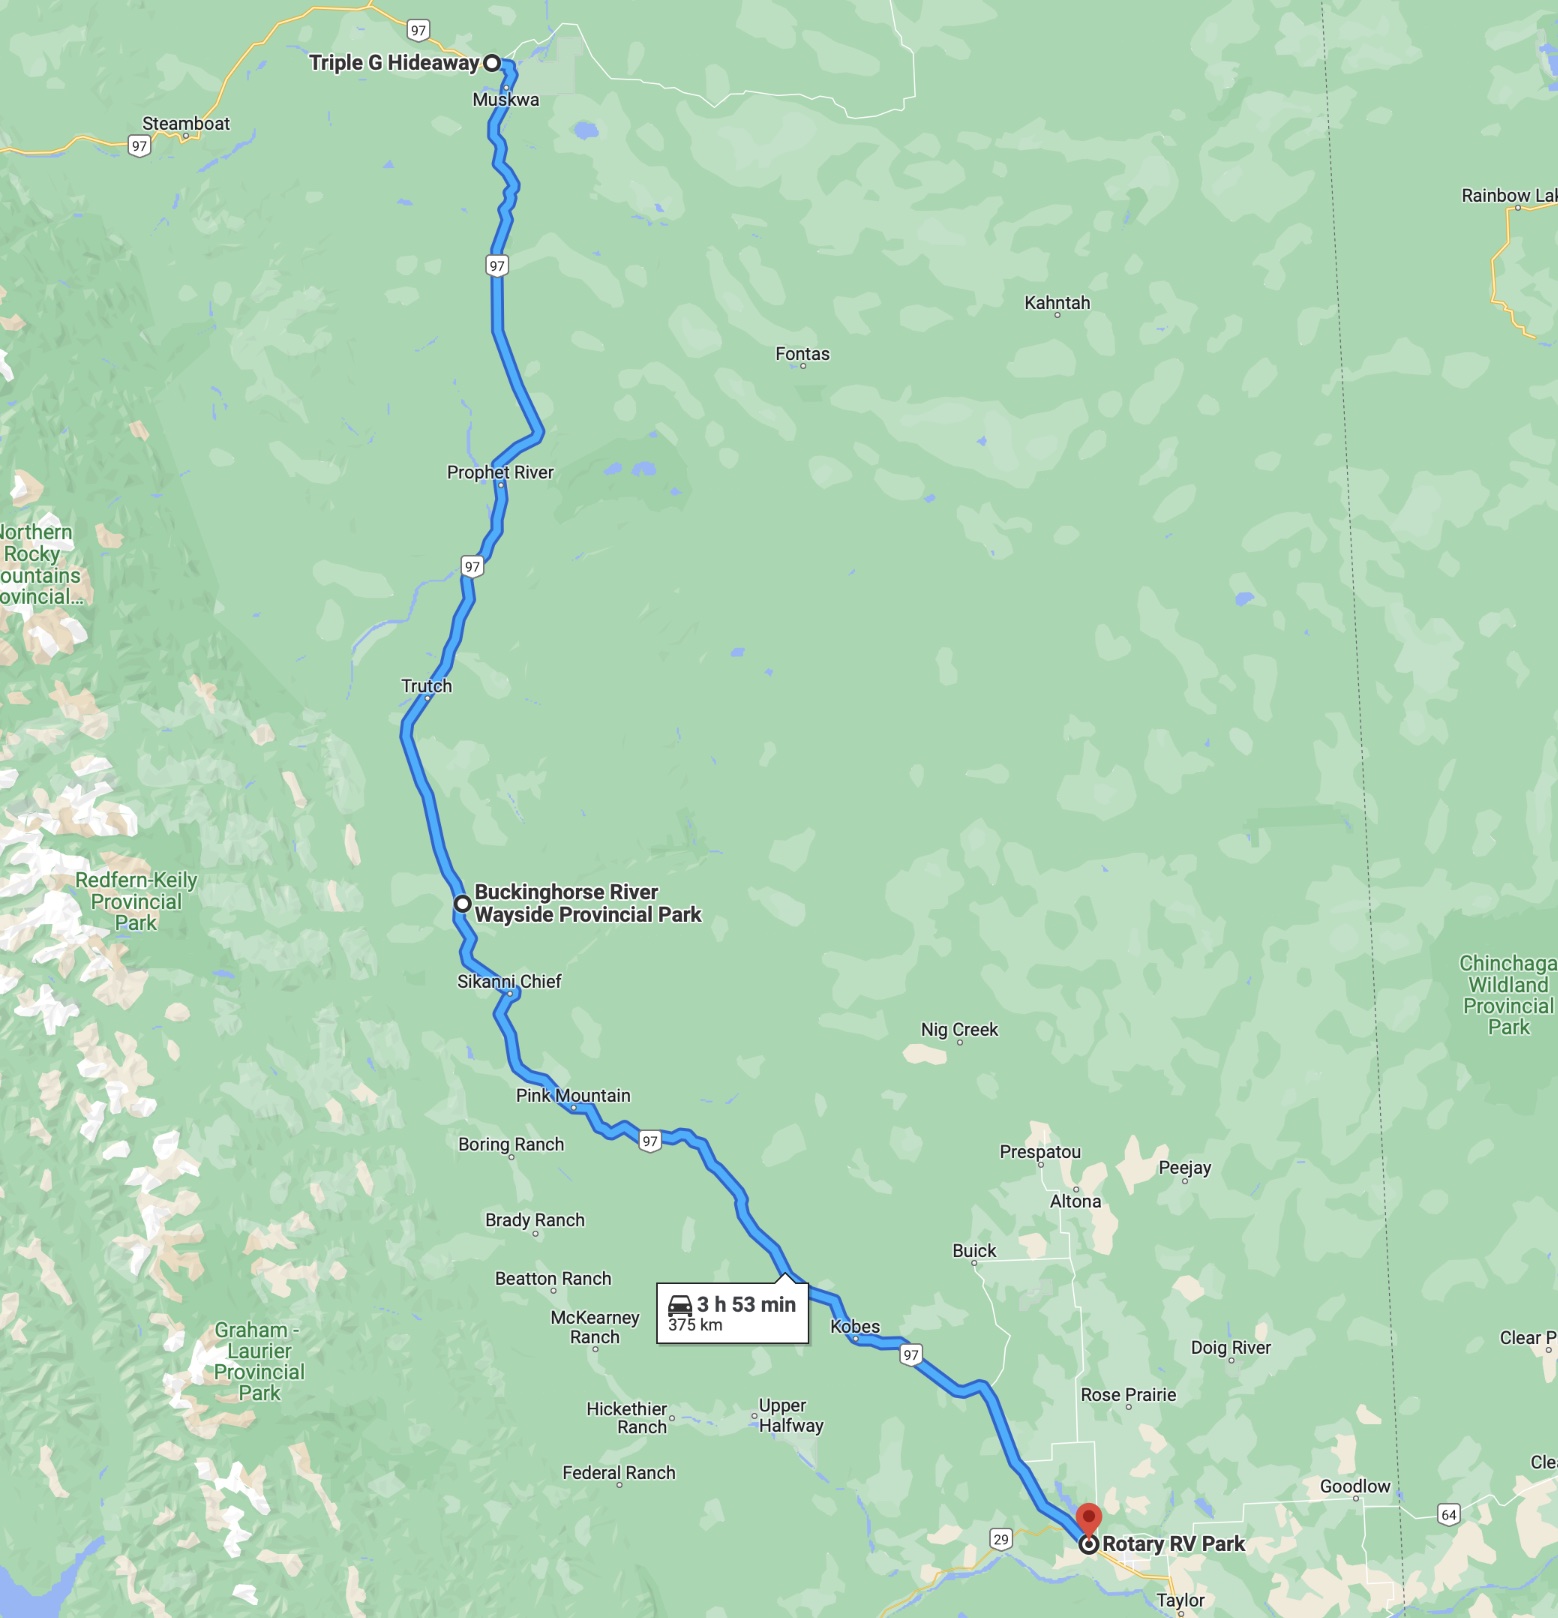 Kartenausschnitt aus Google Maps